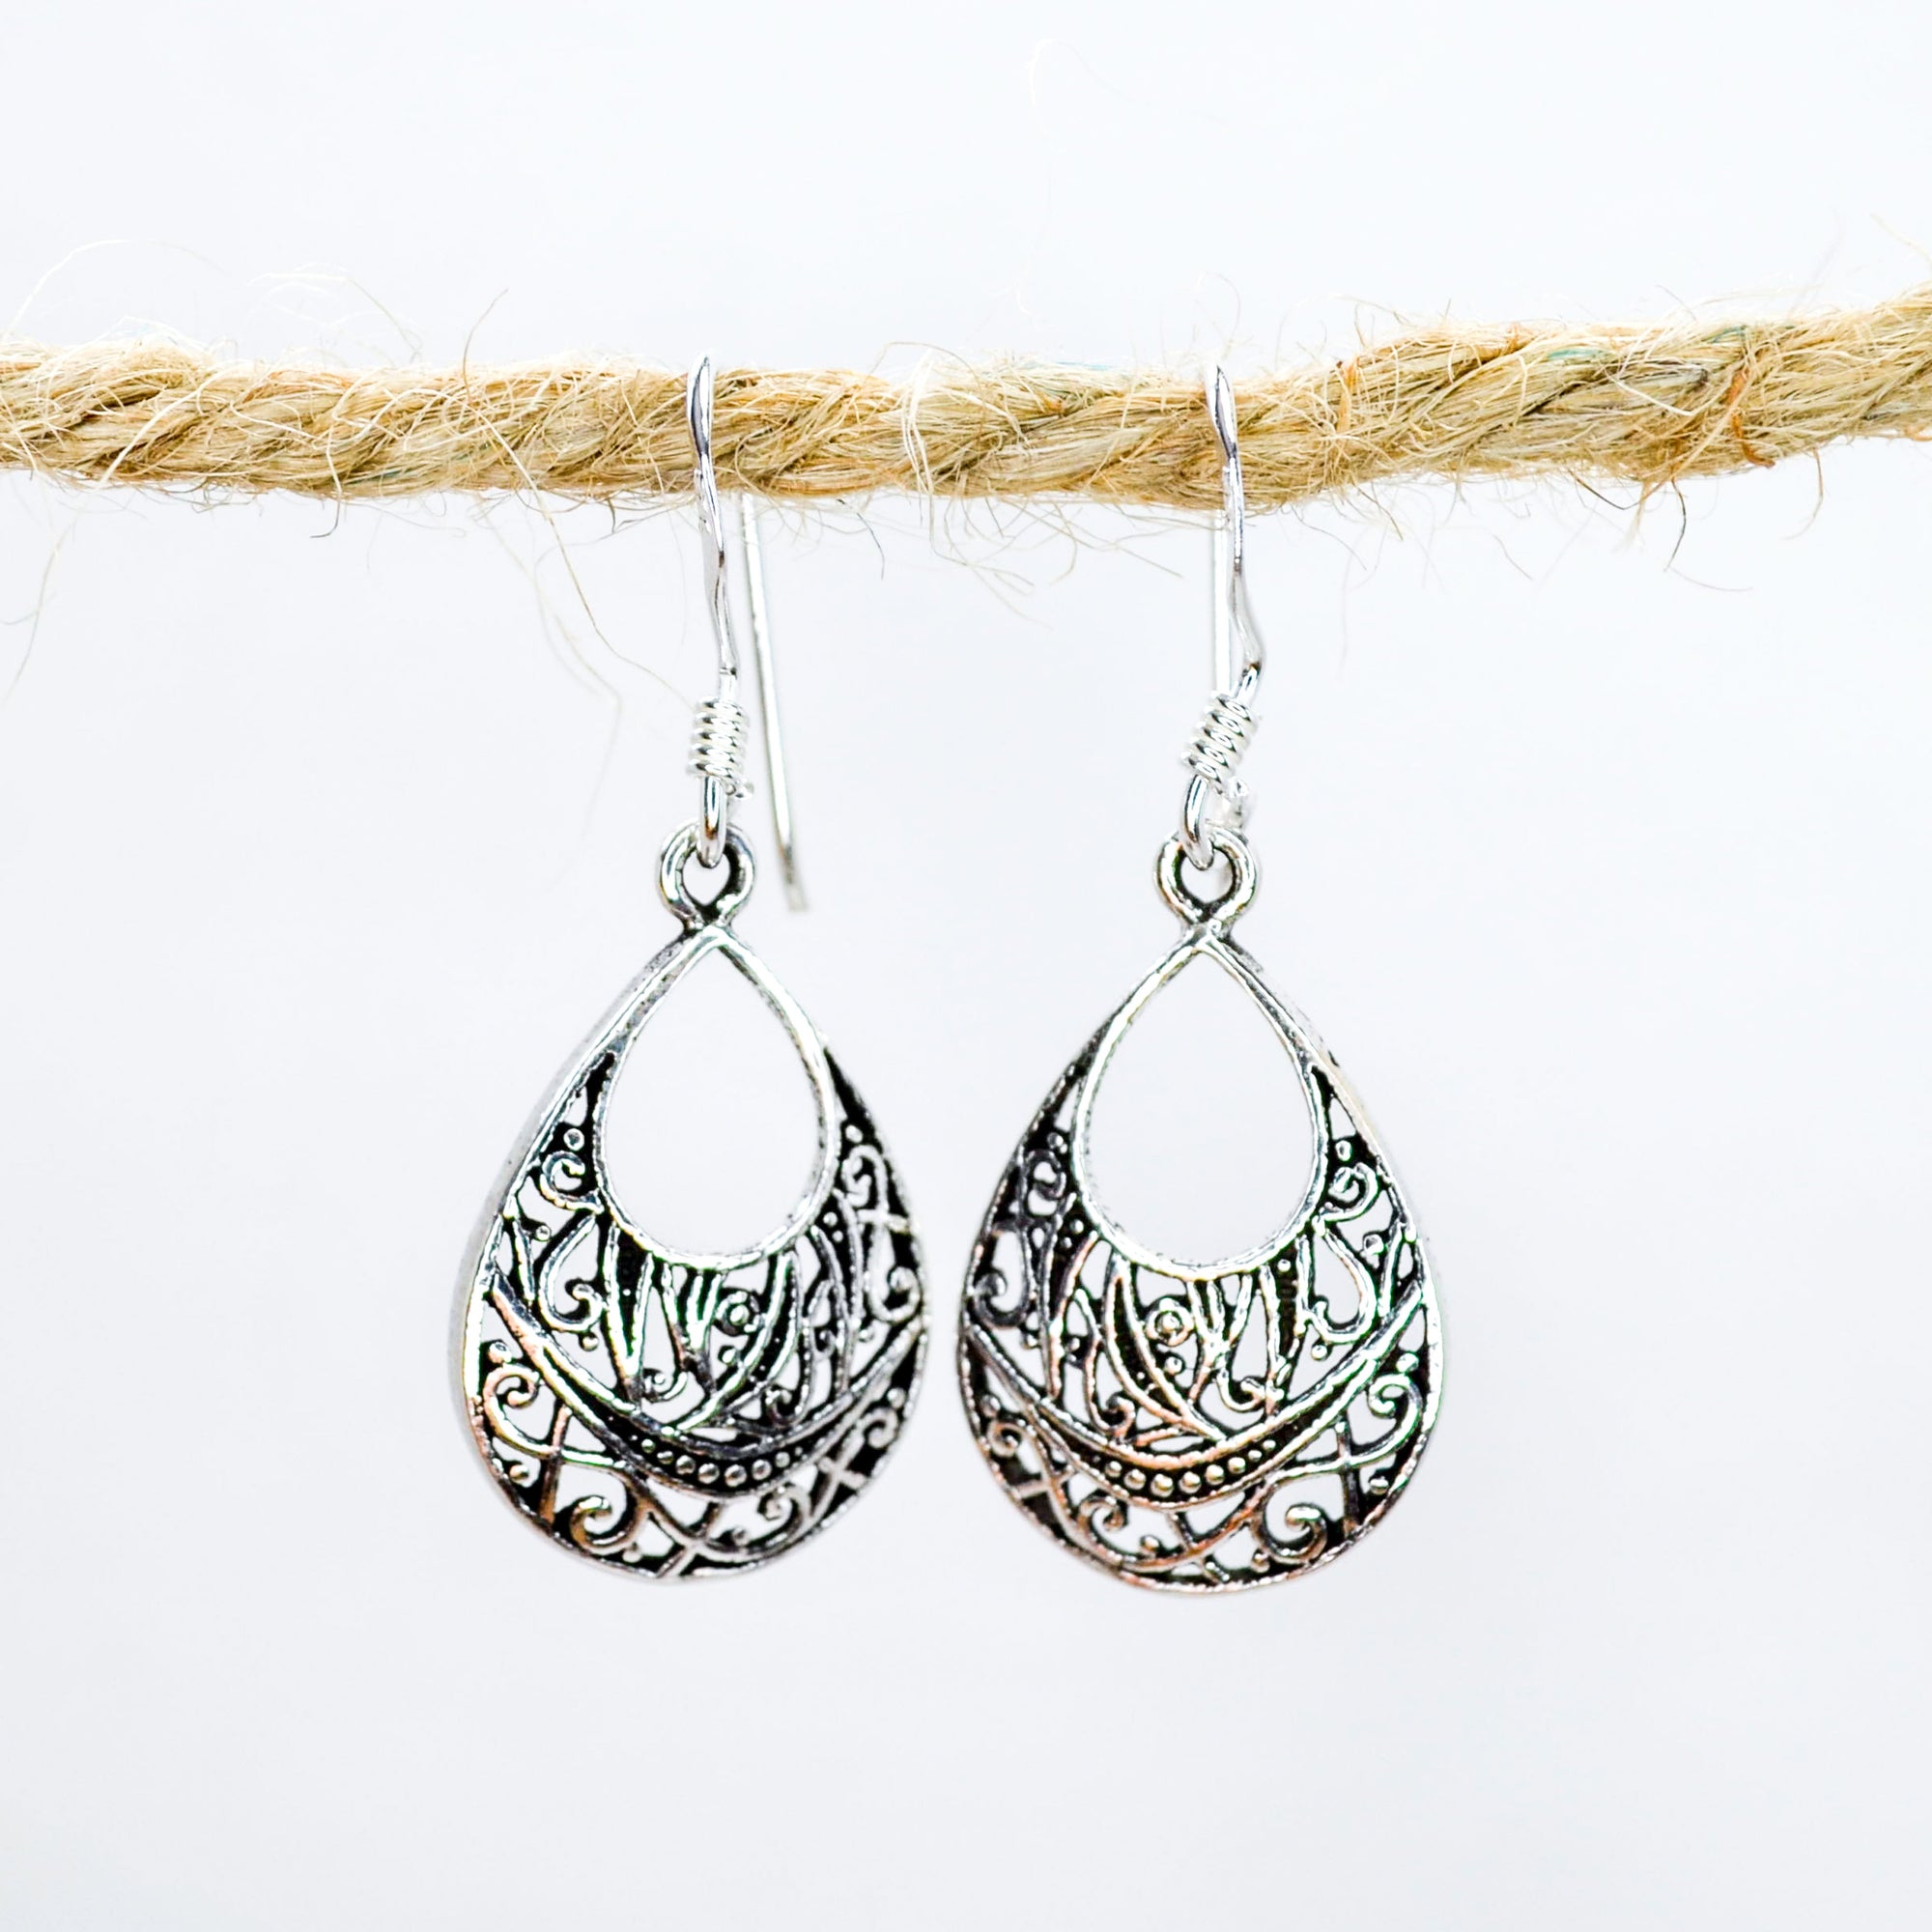 Teardrop shaped earrings in silver with intricate patterns inside